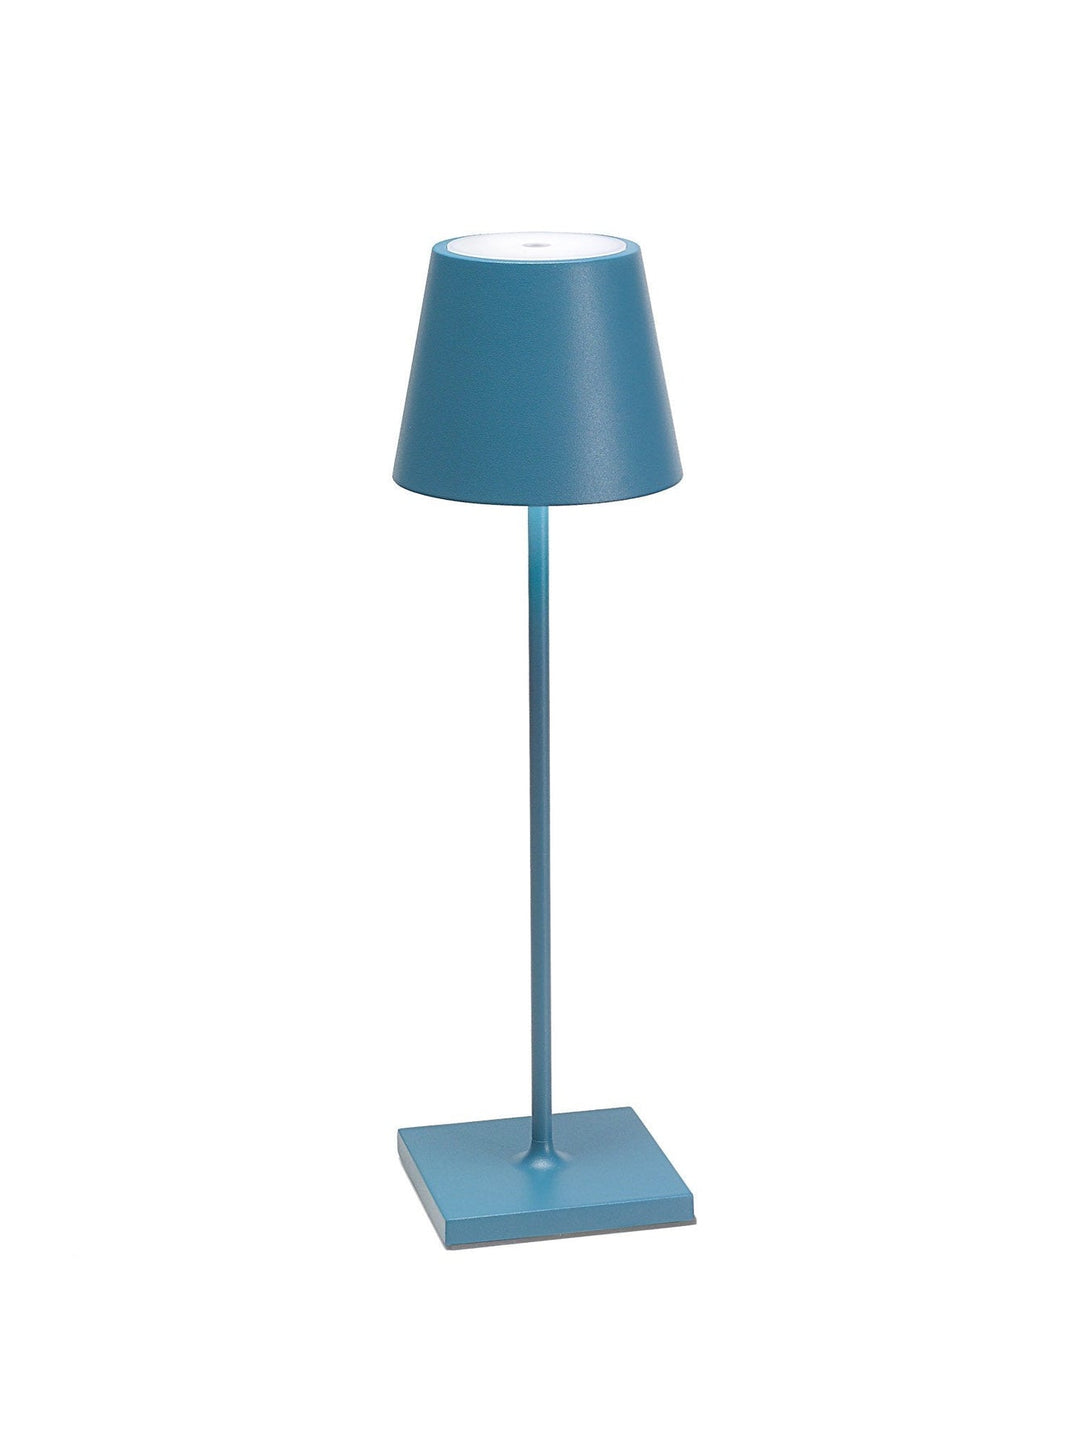 Poldina Lamp